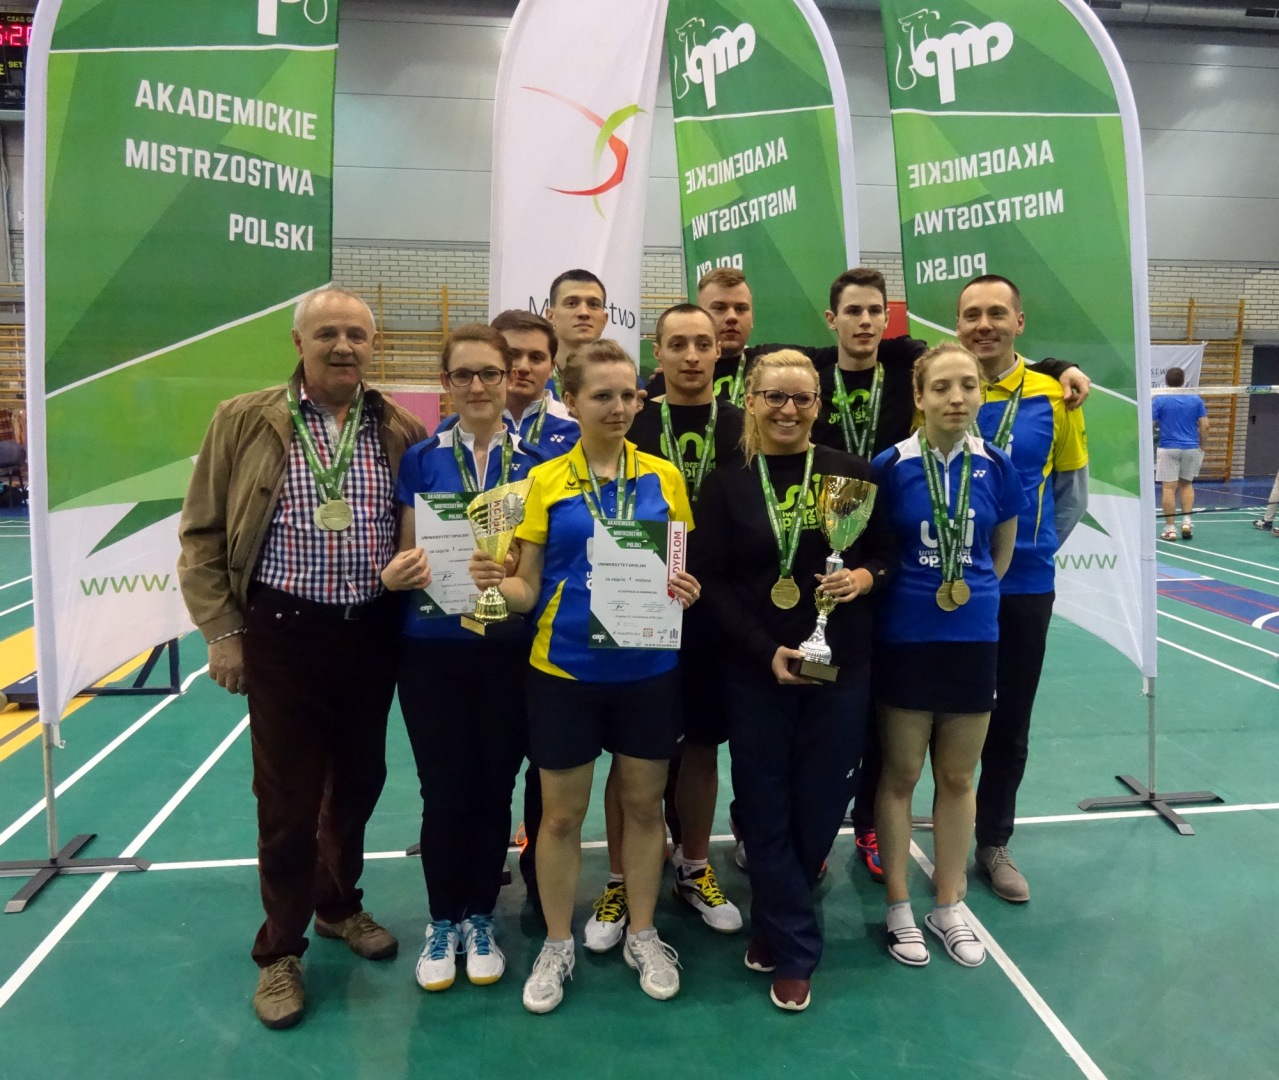 Tak tworzymy historię – drużyna UO została Akademickim Mistrzem Polski w Badmintona 2016. Po raz trzeci z rzędu